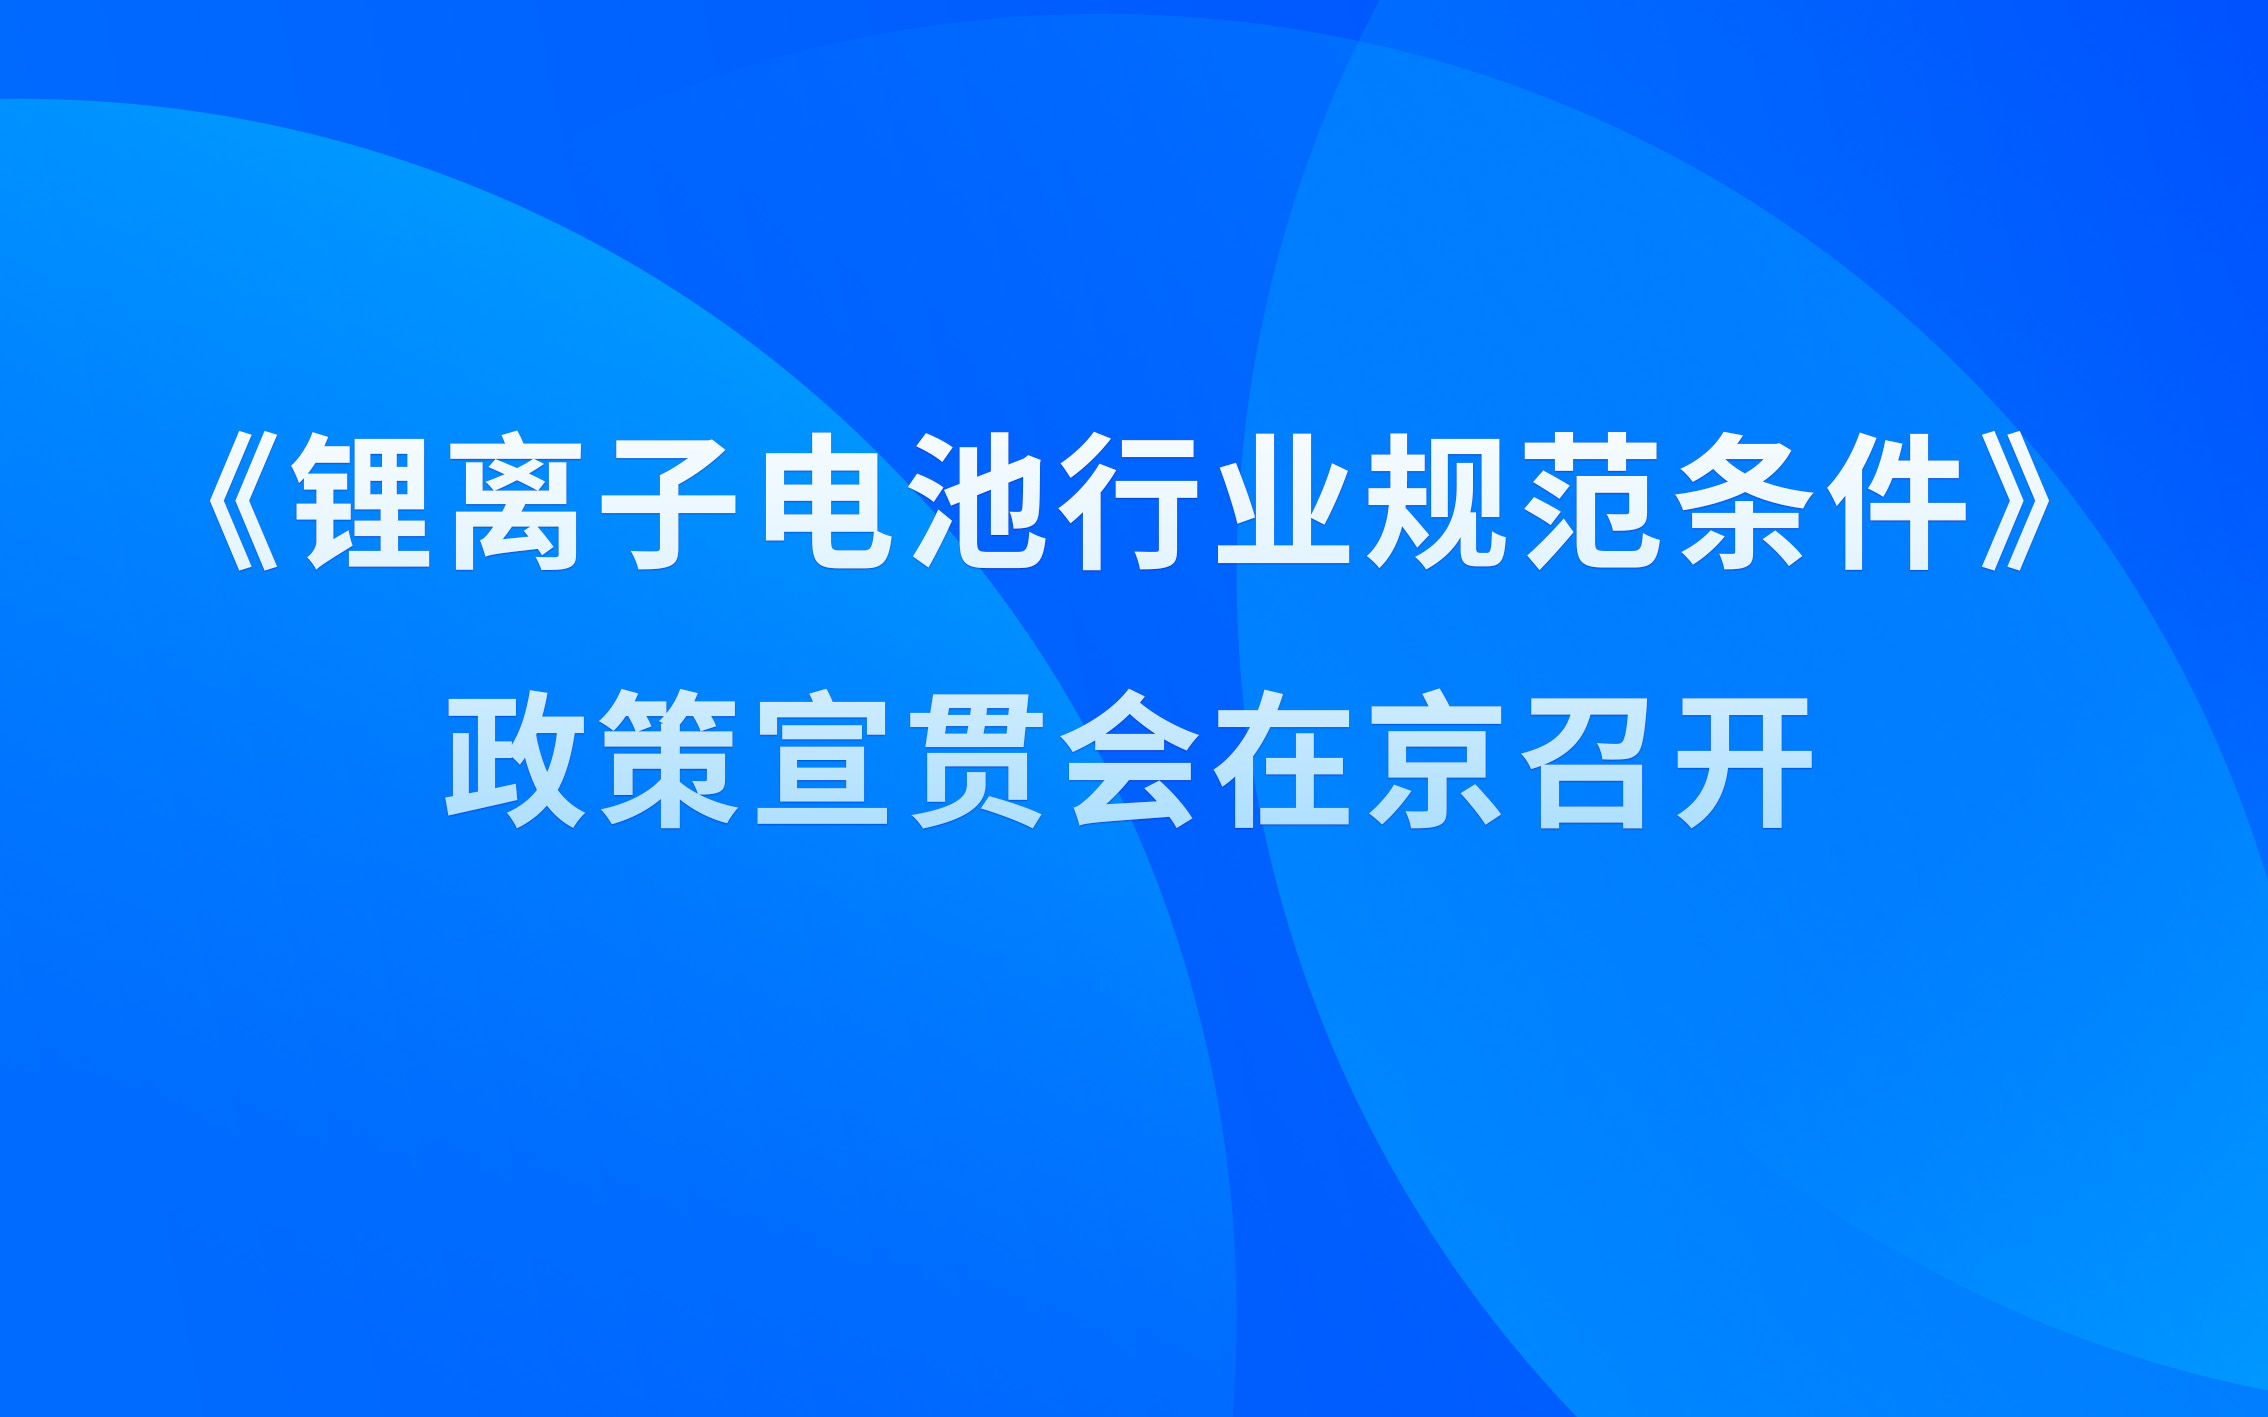 《锂离子电池行业规范条件》政策宣贯会在京召开